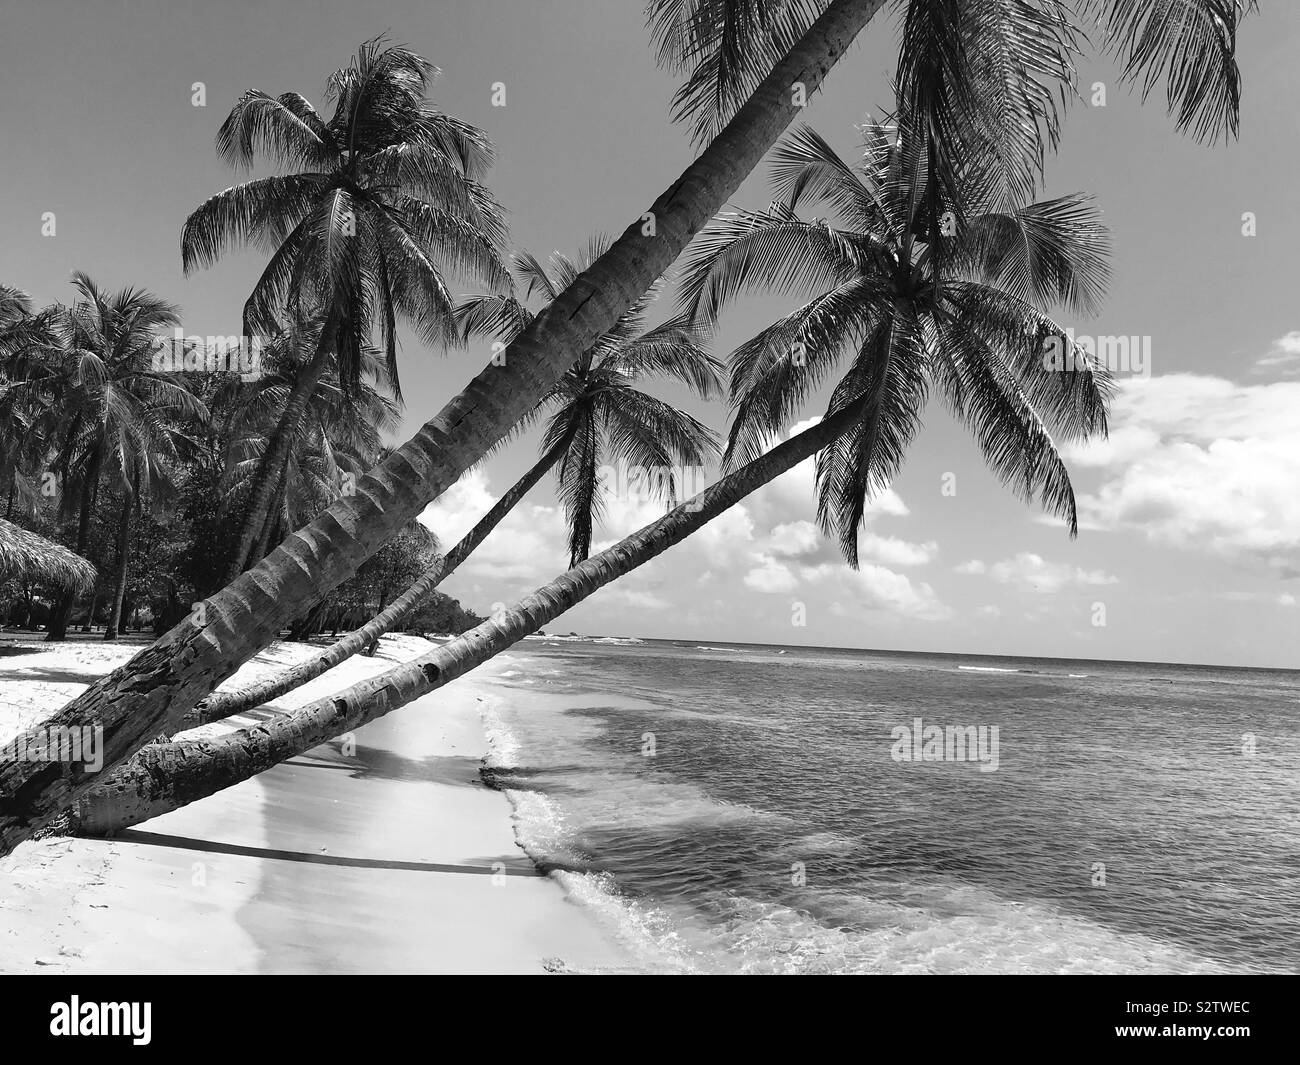 Palme appoggiata su una sabbia bianca spiaggia tropicale la creazione di ombre sul chiaro mare dei Caraibi - Mustique Island, St. Vincent e le Grenadine Foto Stock